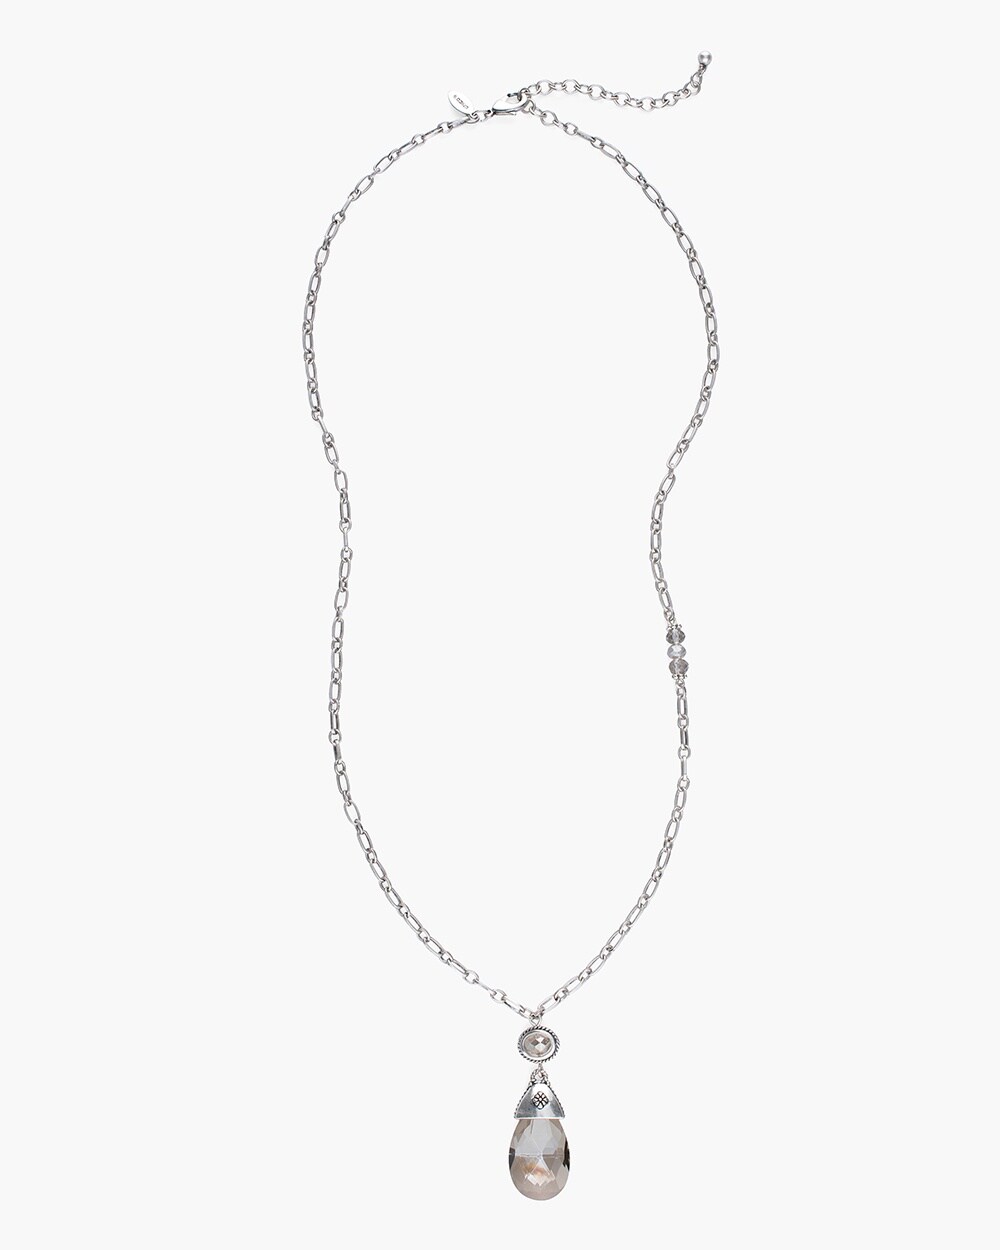 Long Silver-Tone Artisan Pendant Necklace